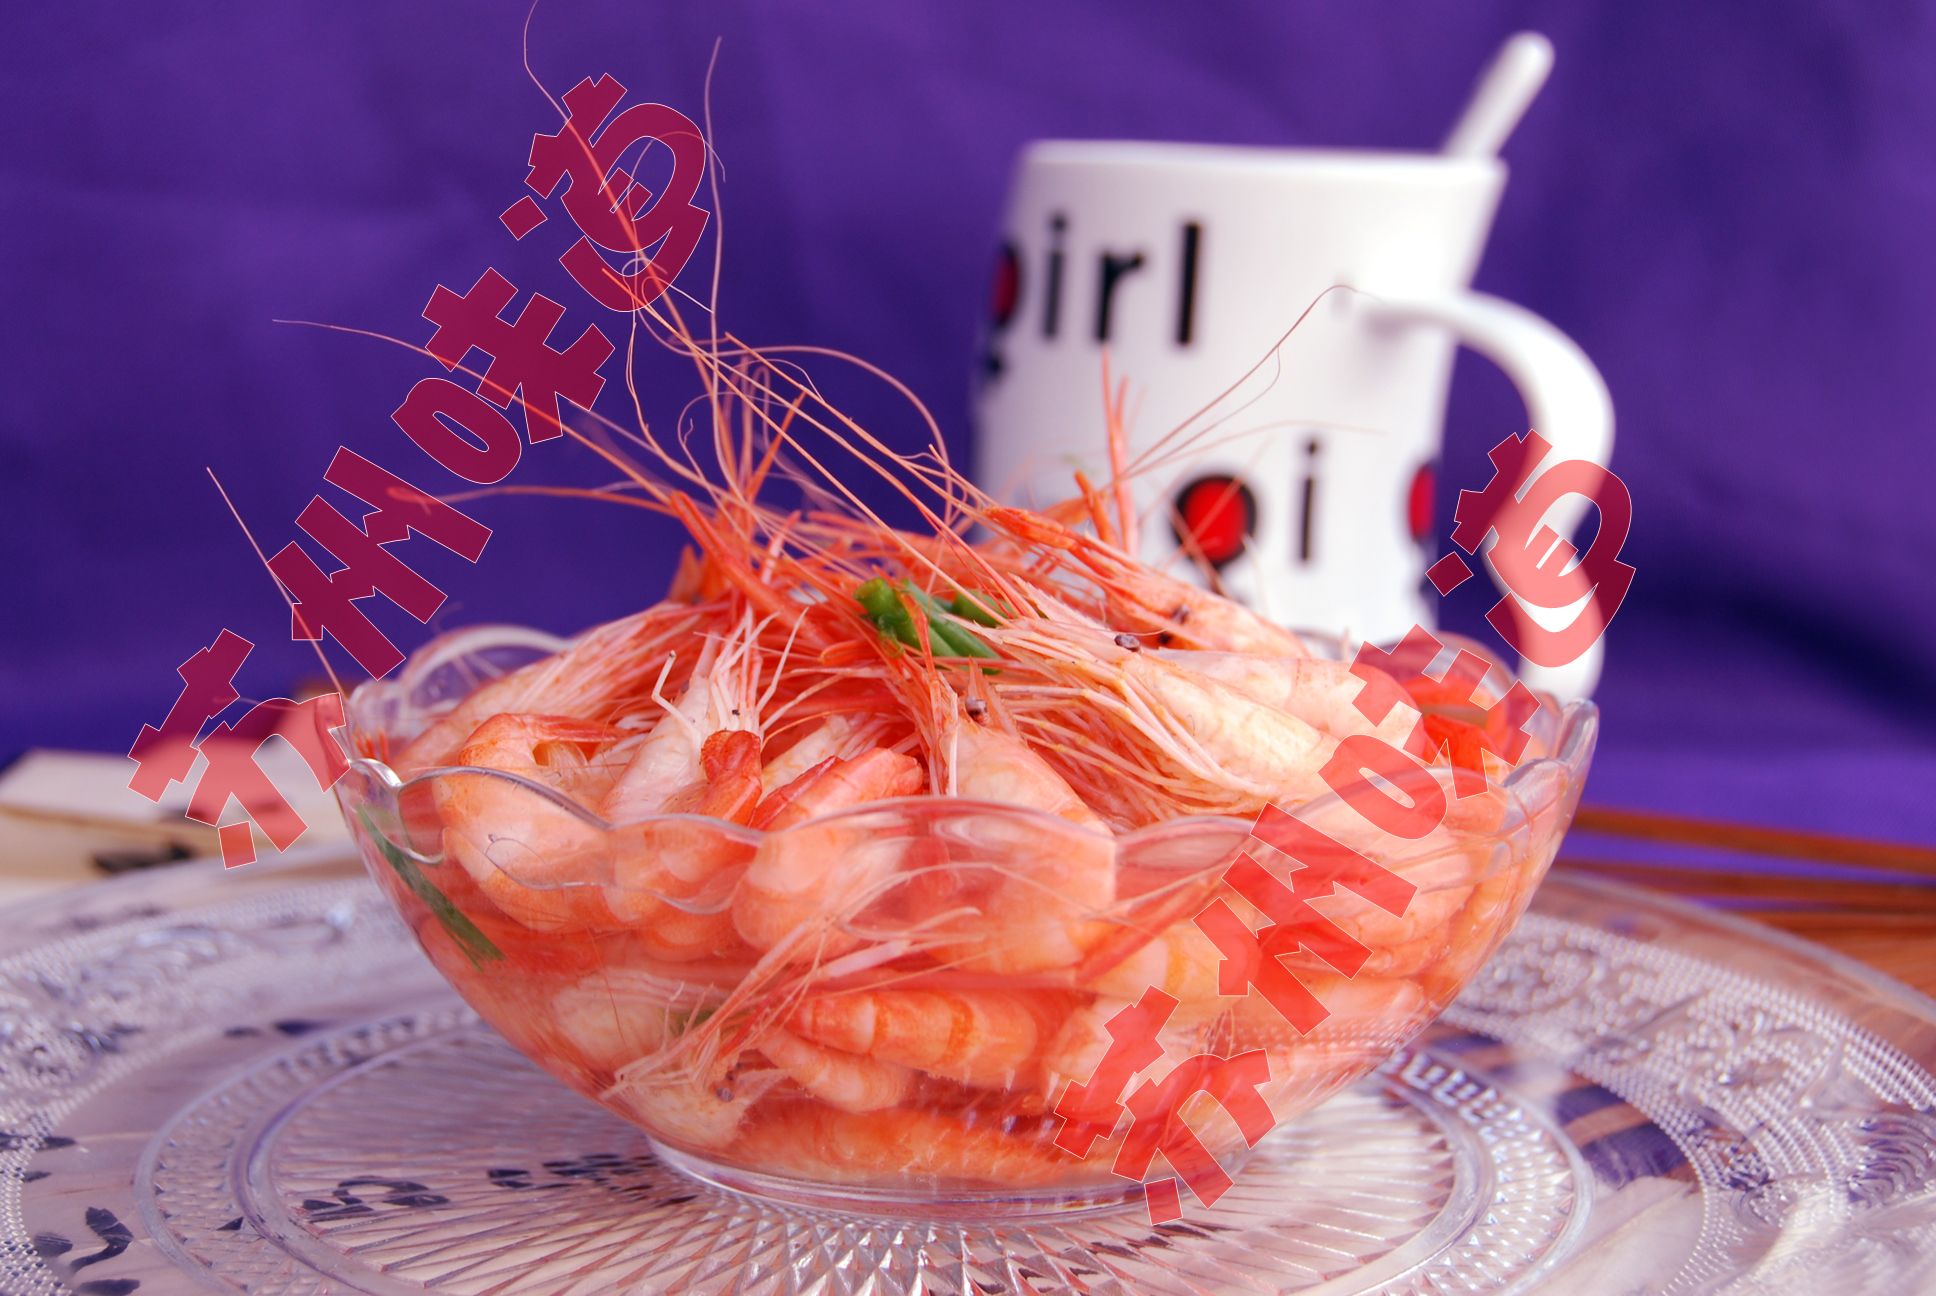 查看 制作最简单的盐水河虾 的成品图 - 菜谱 - 